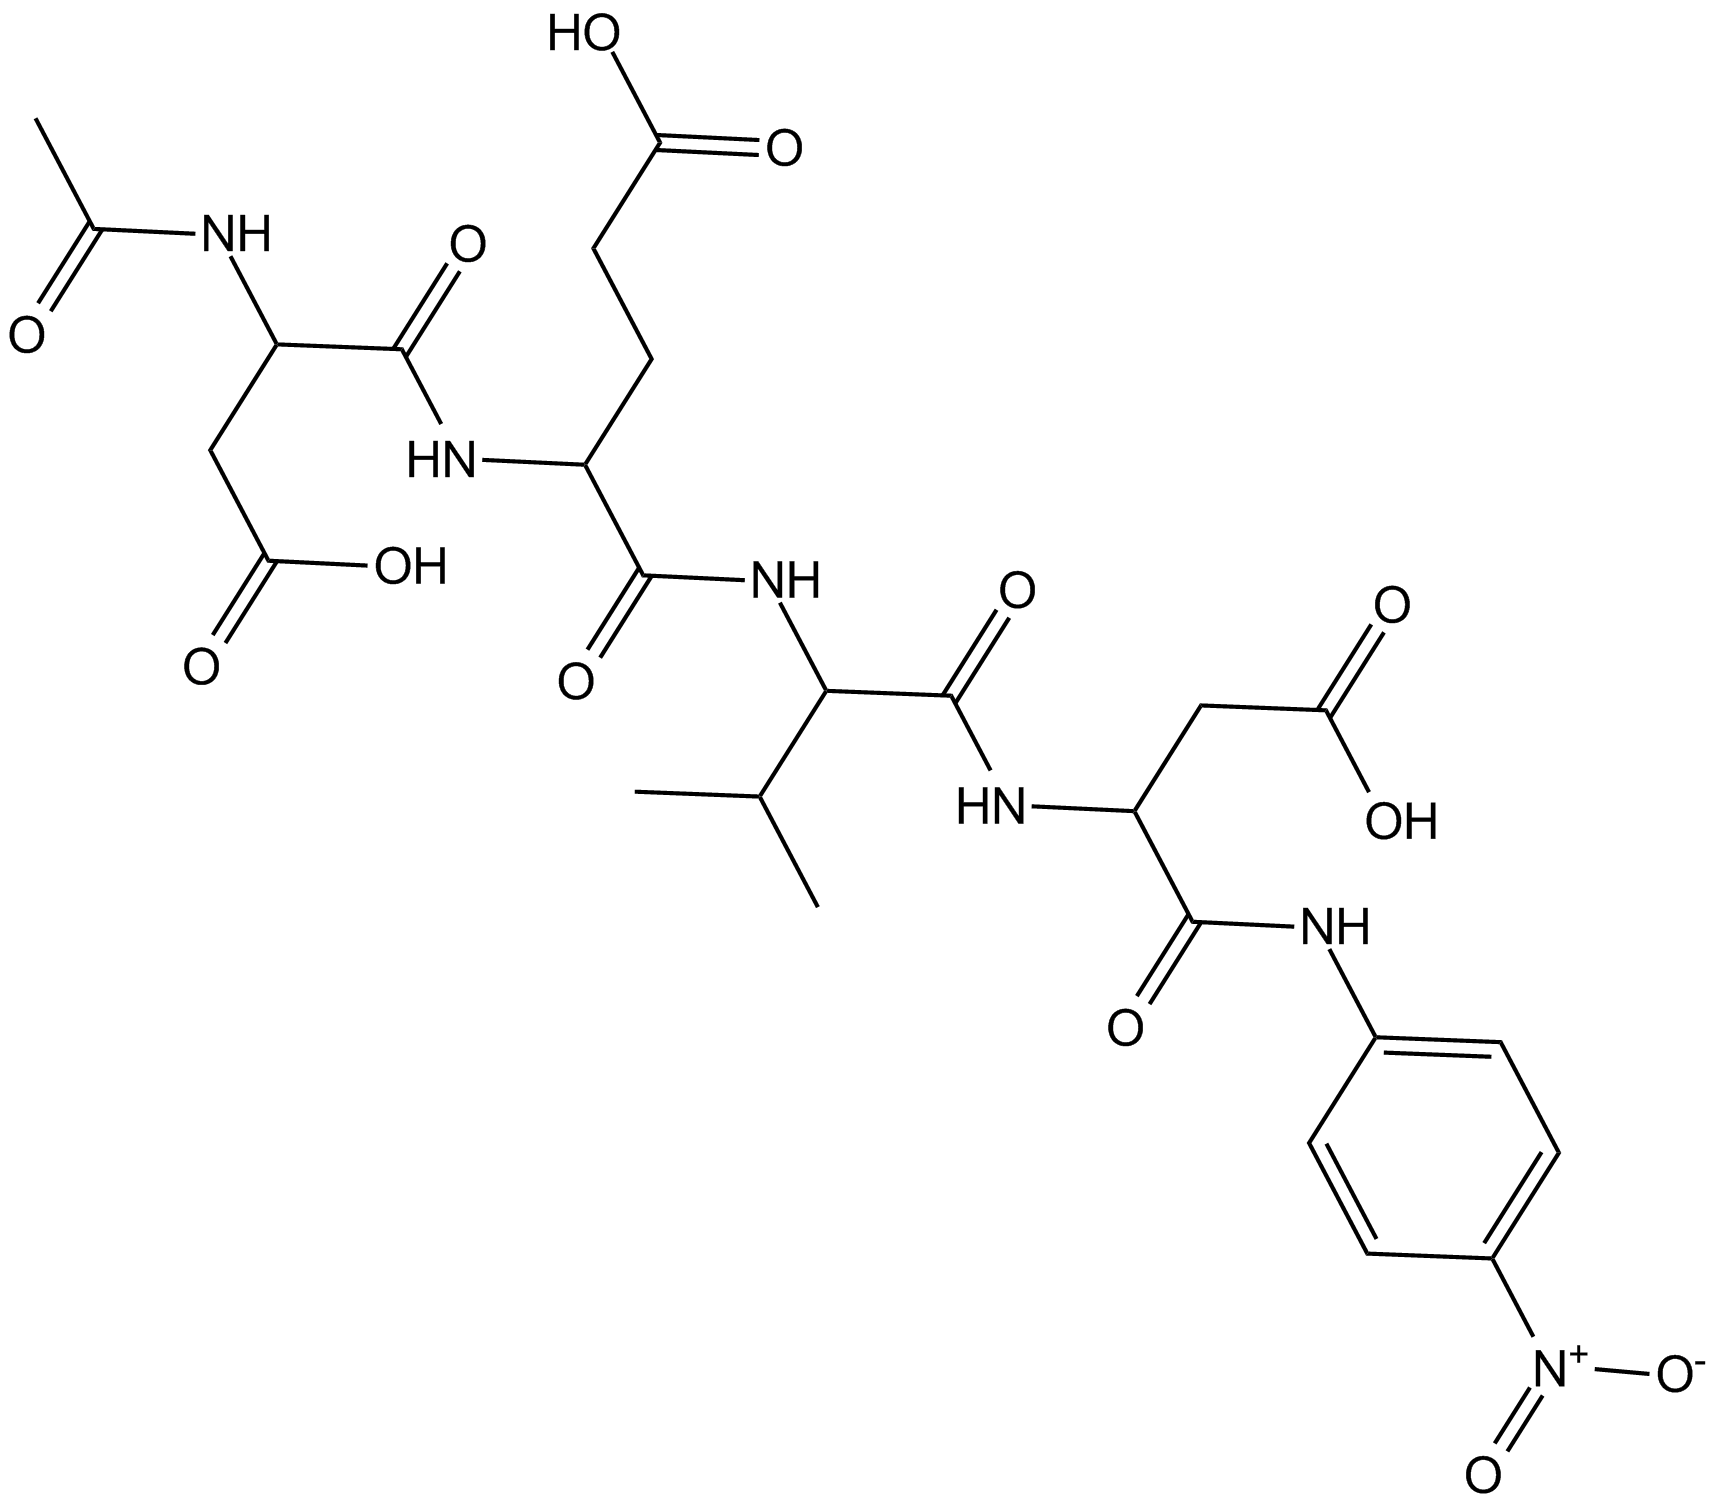 Ac-DEVD-pNA التركيب الكيميائي